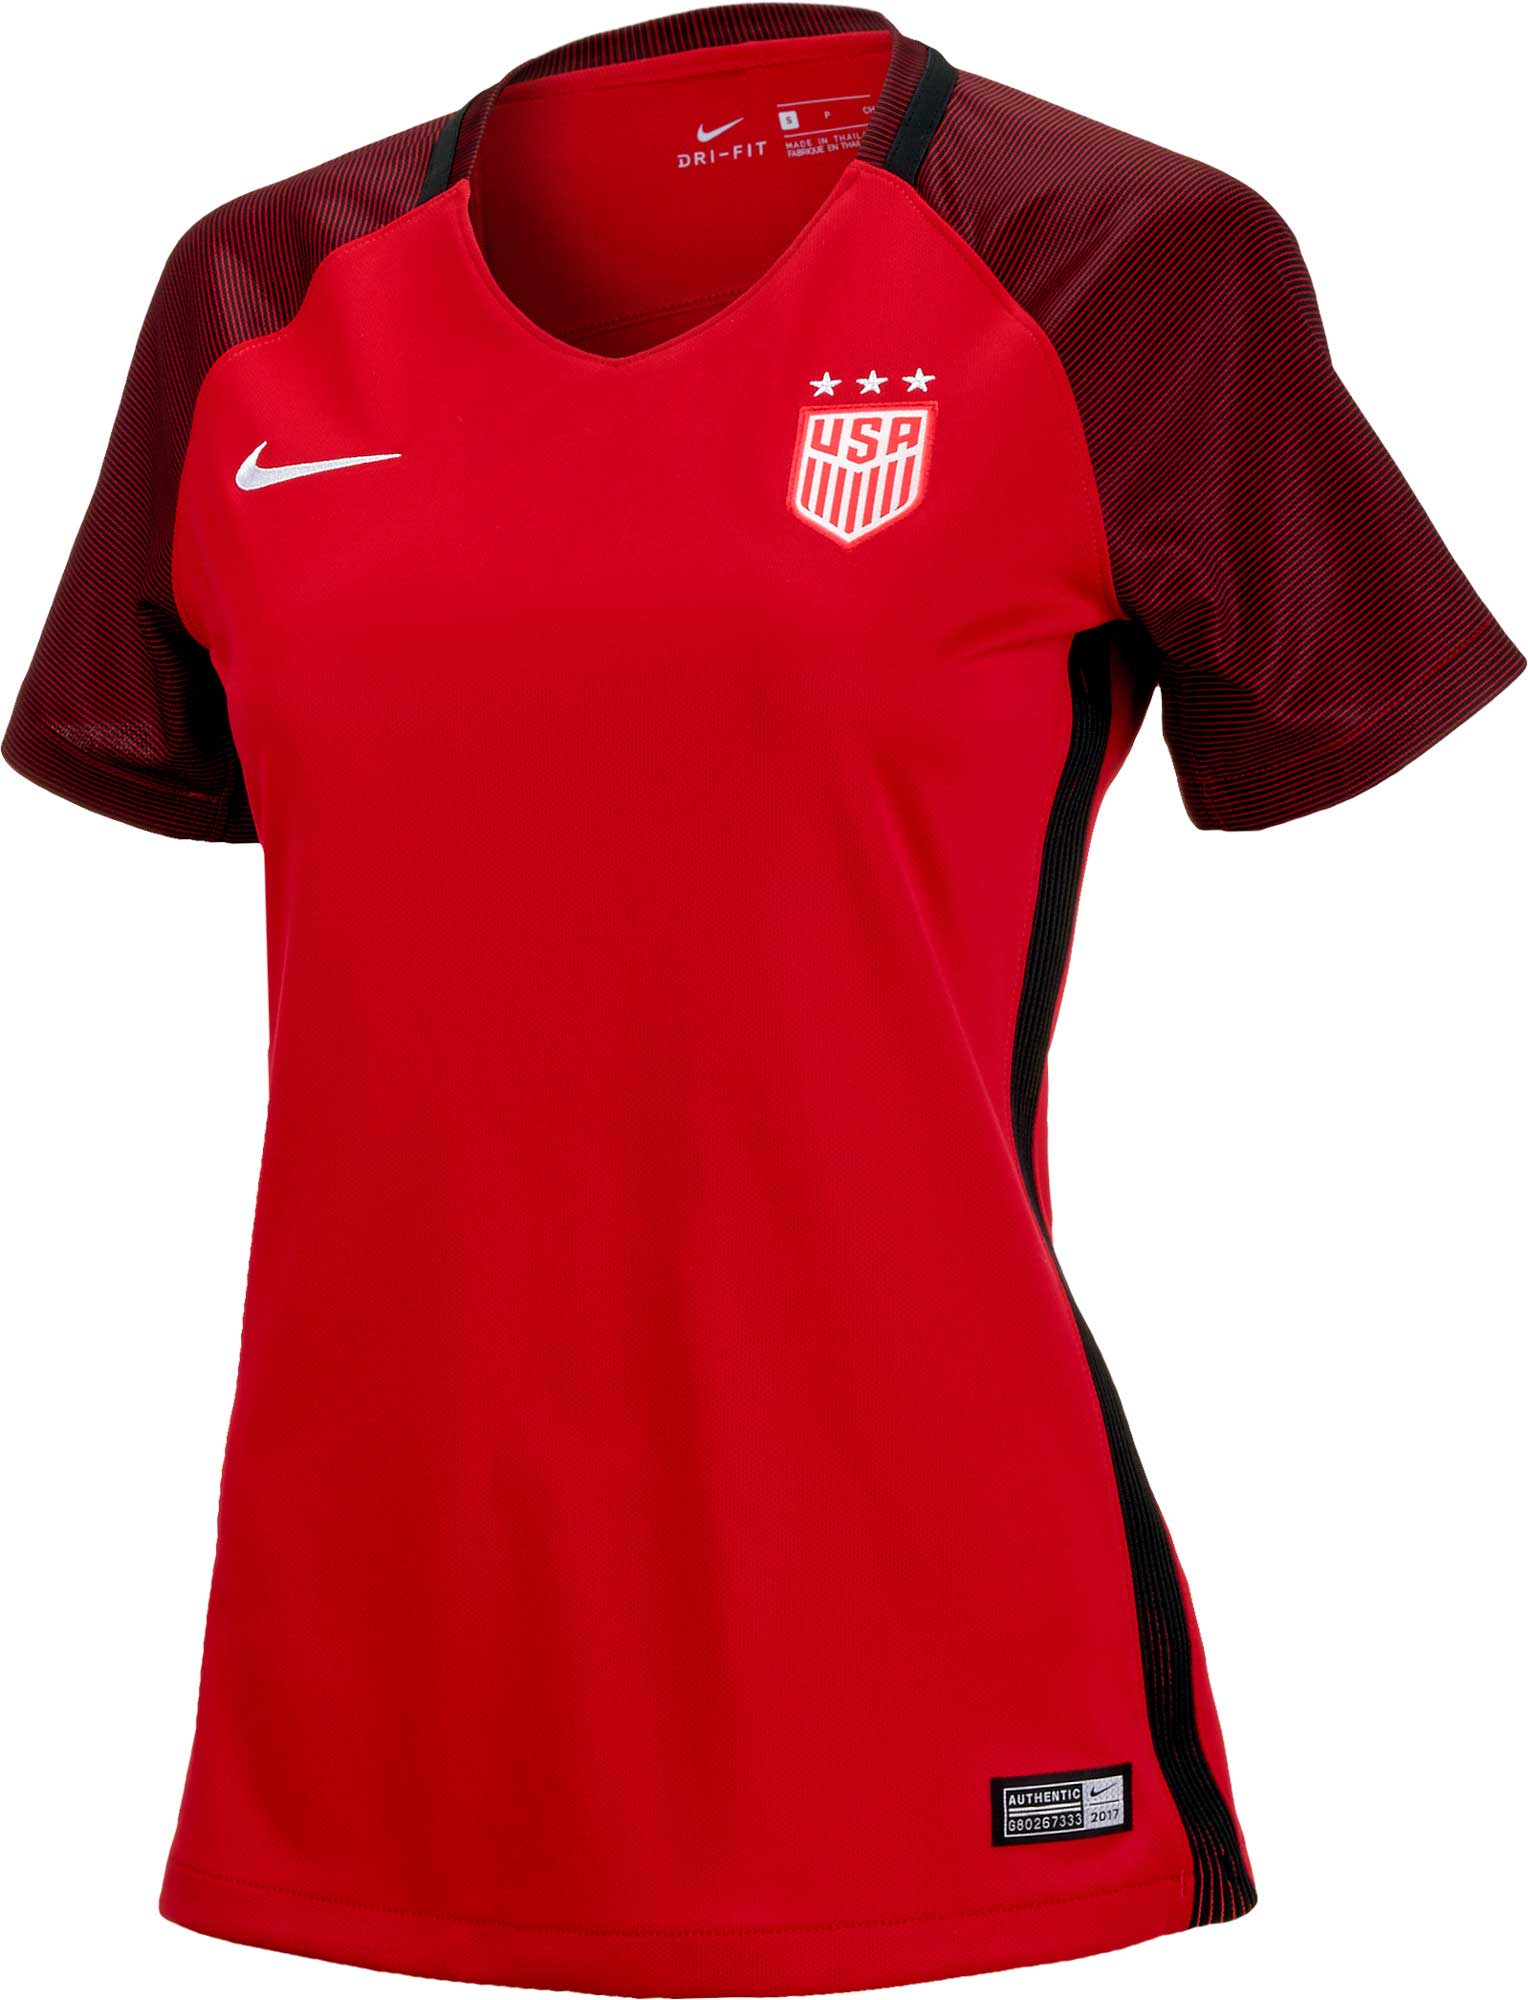 usa women's soccer merchandise